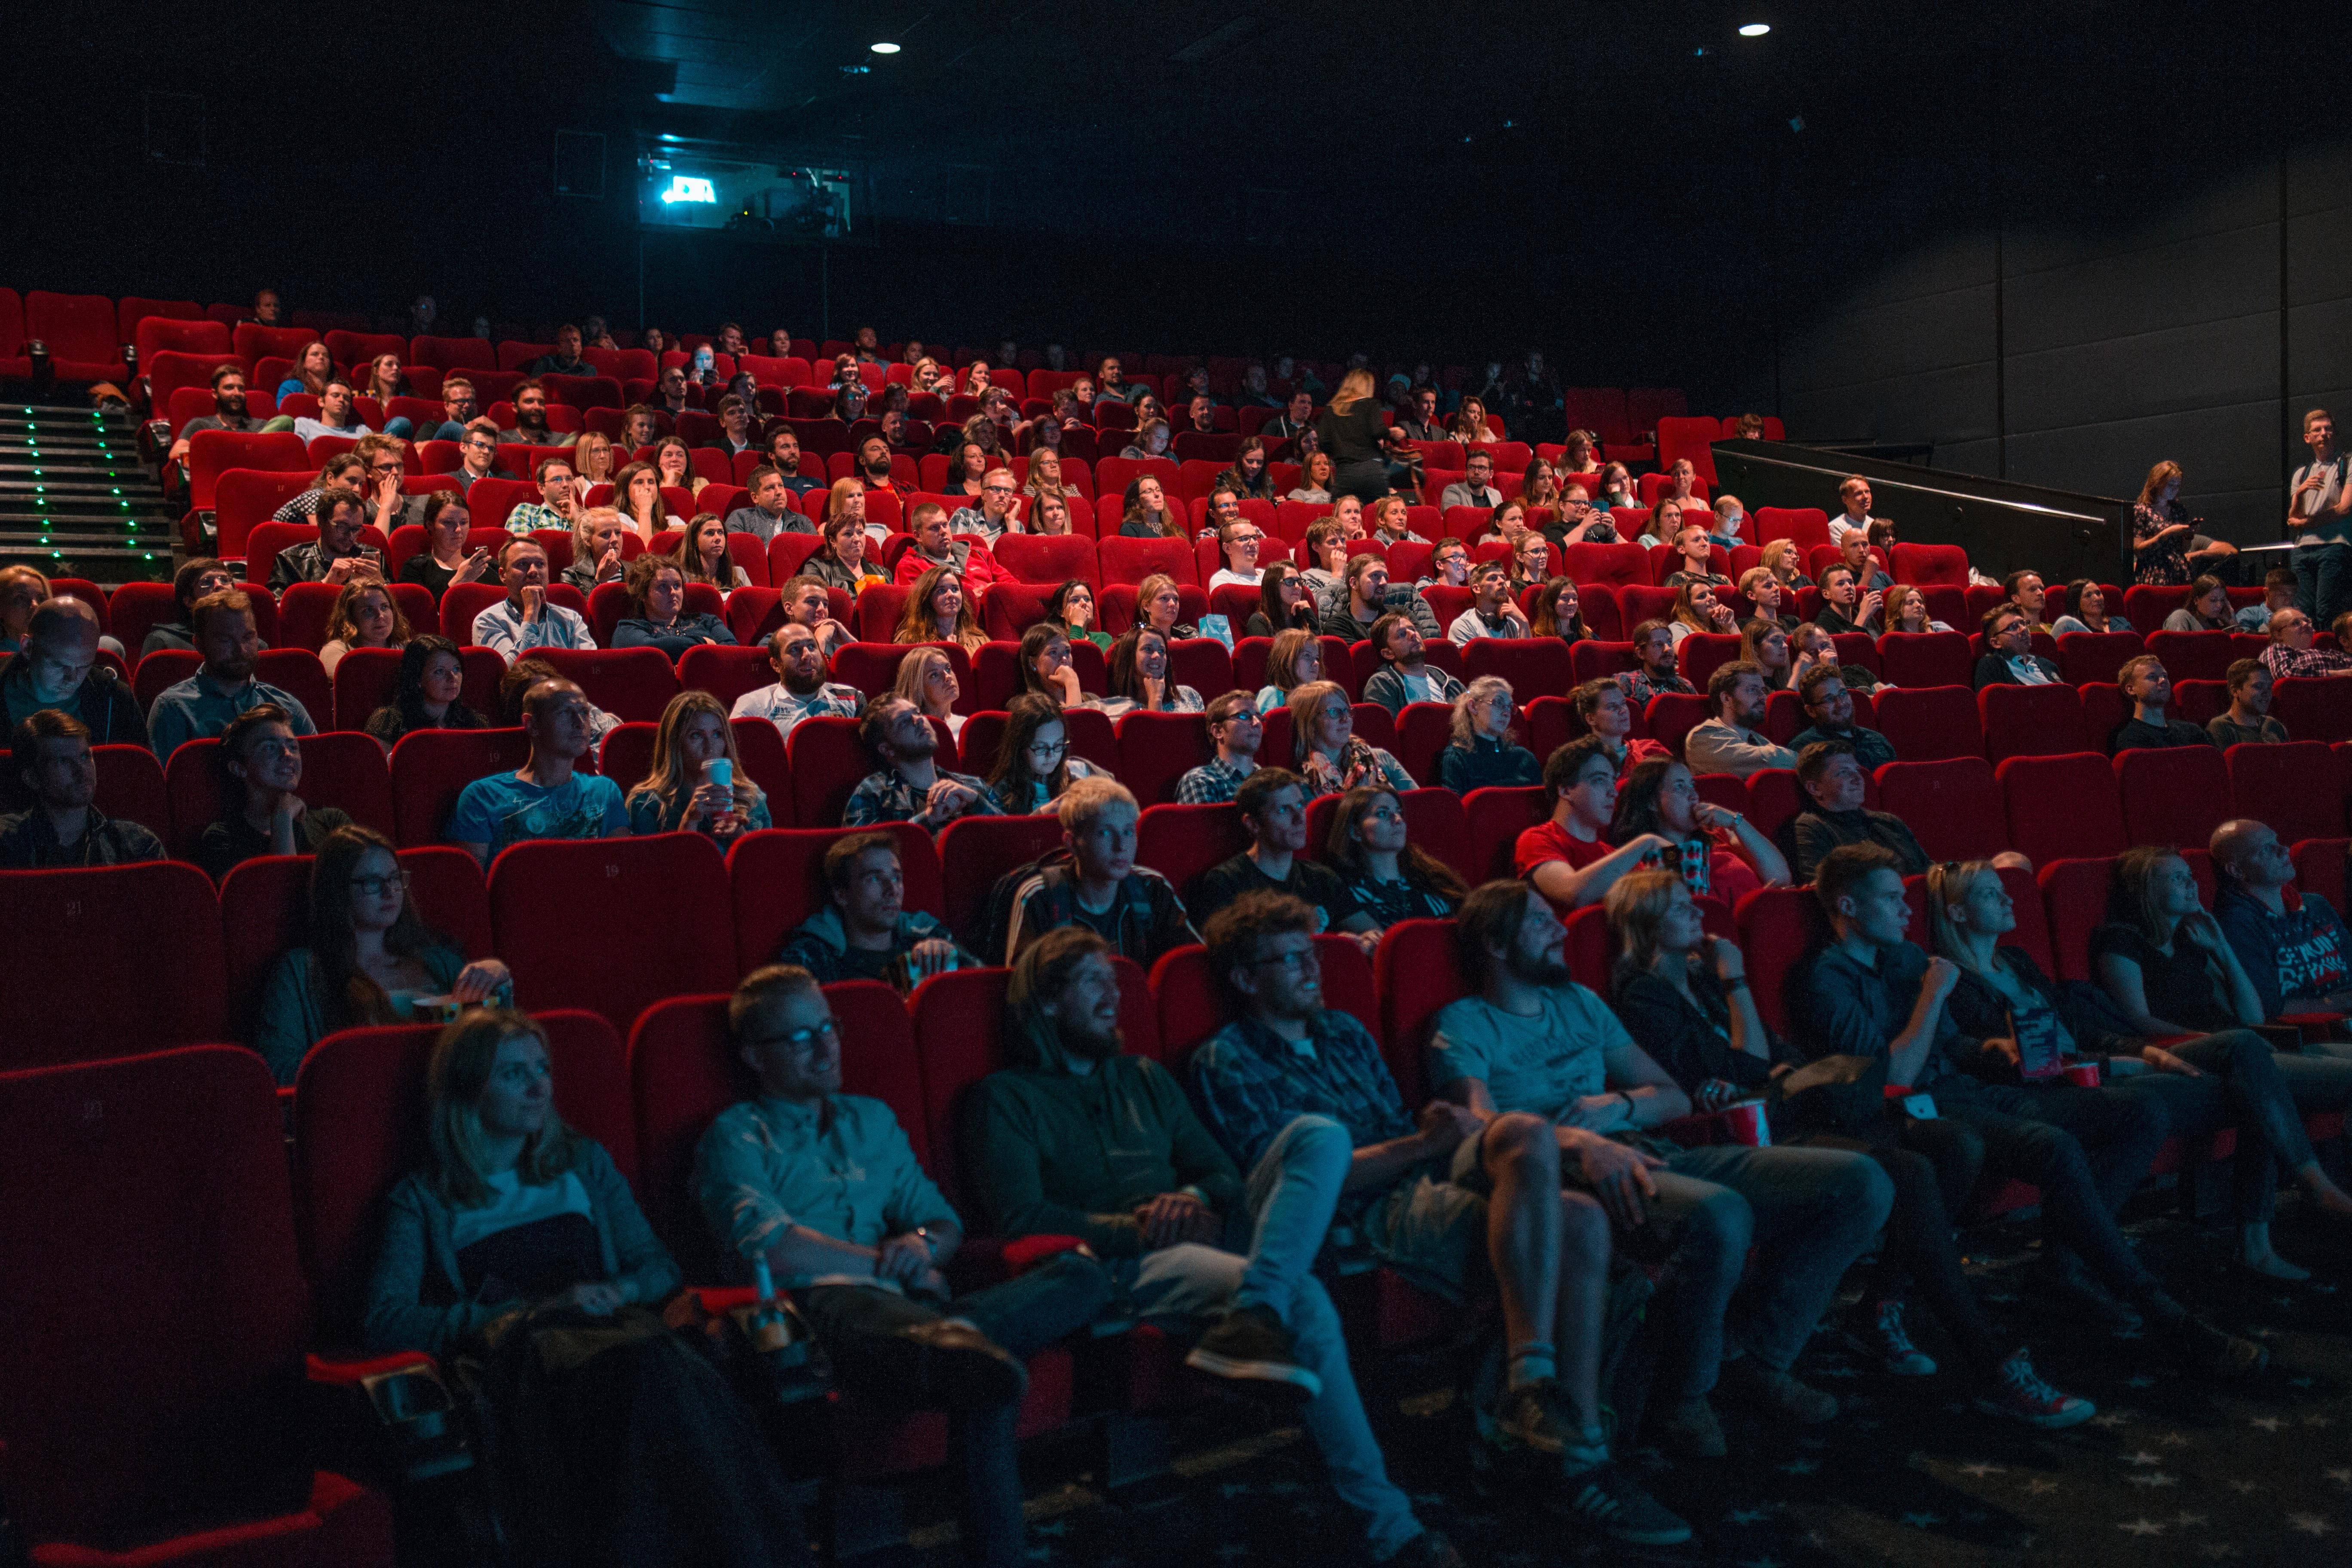 Teltházas moziban nézik az emberek a filmvásznat piros székekről